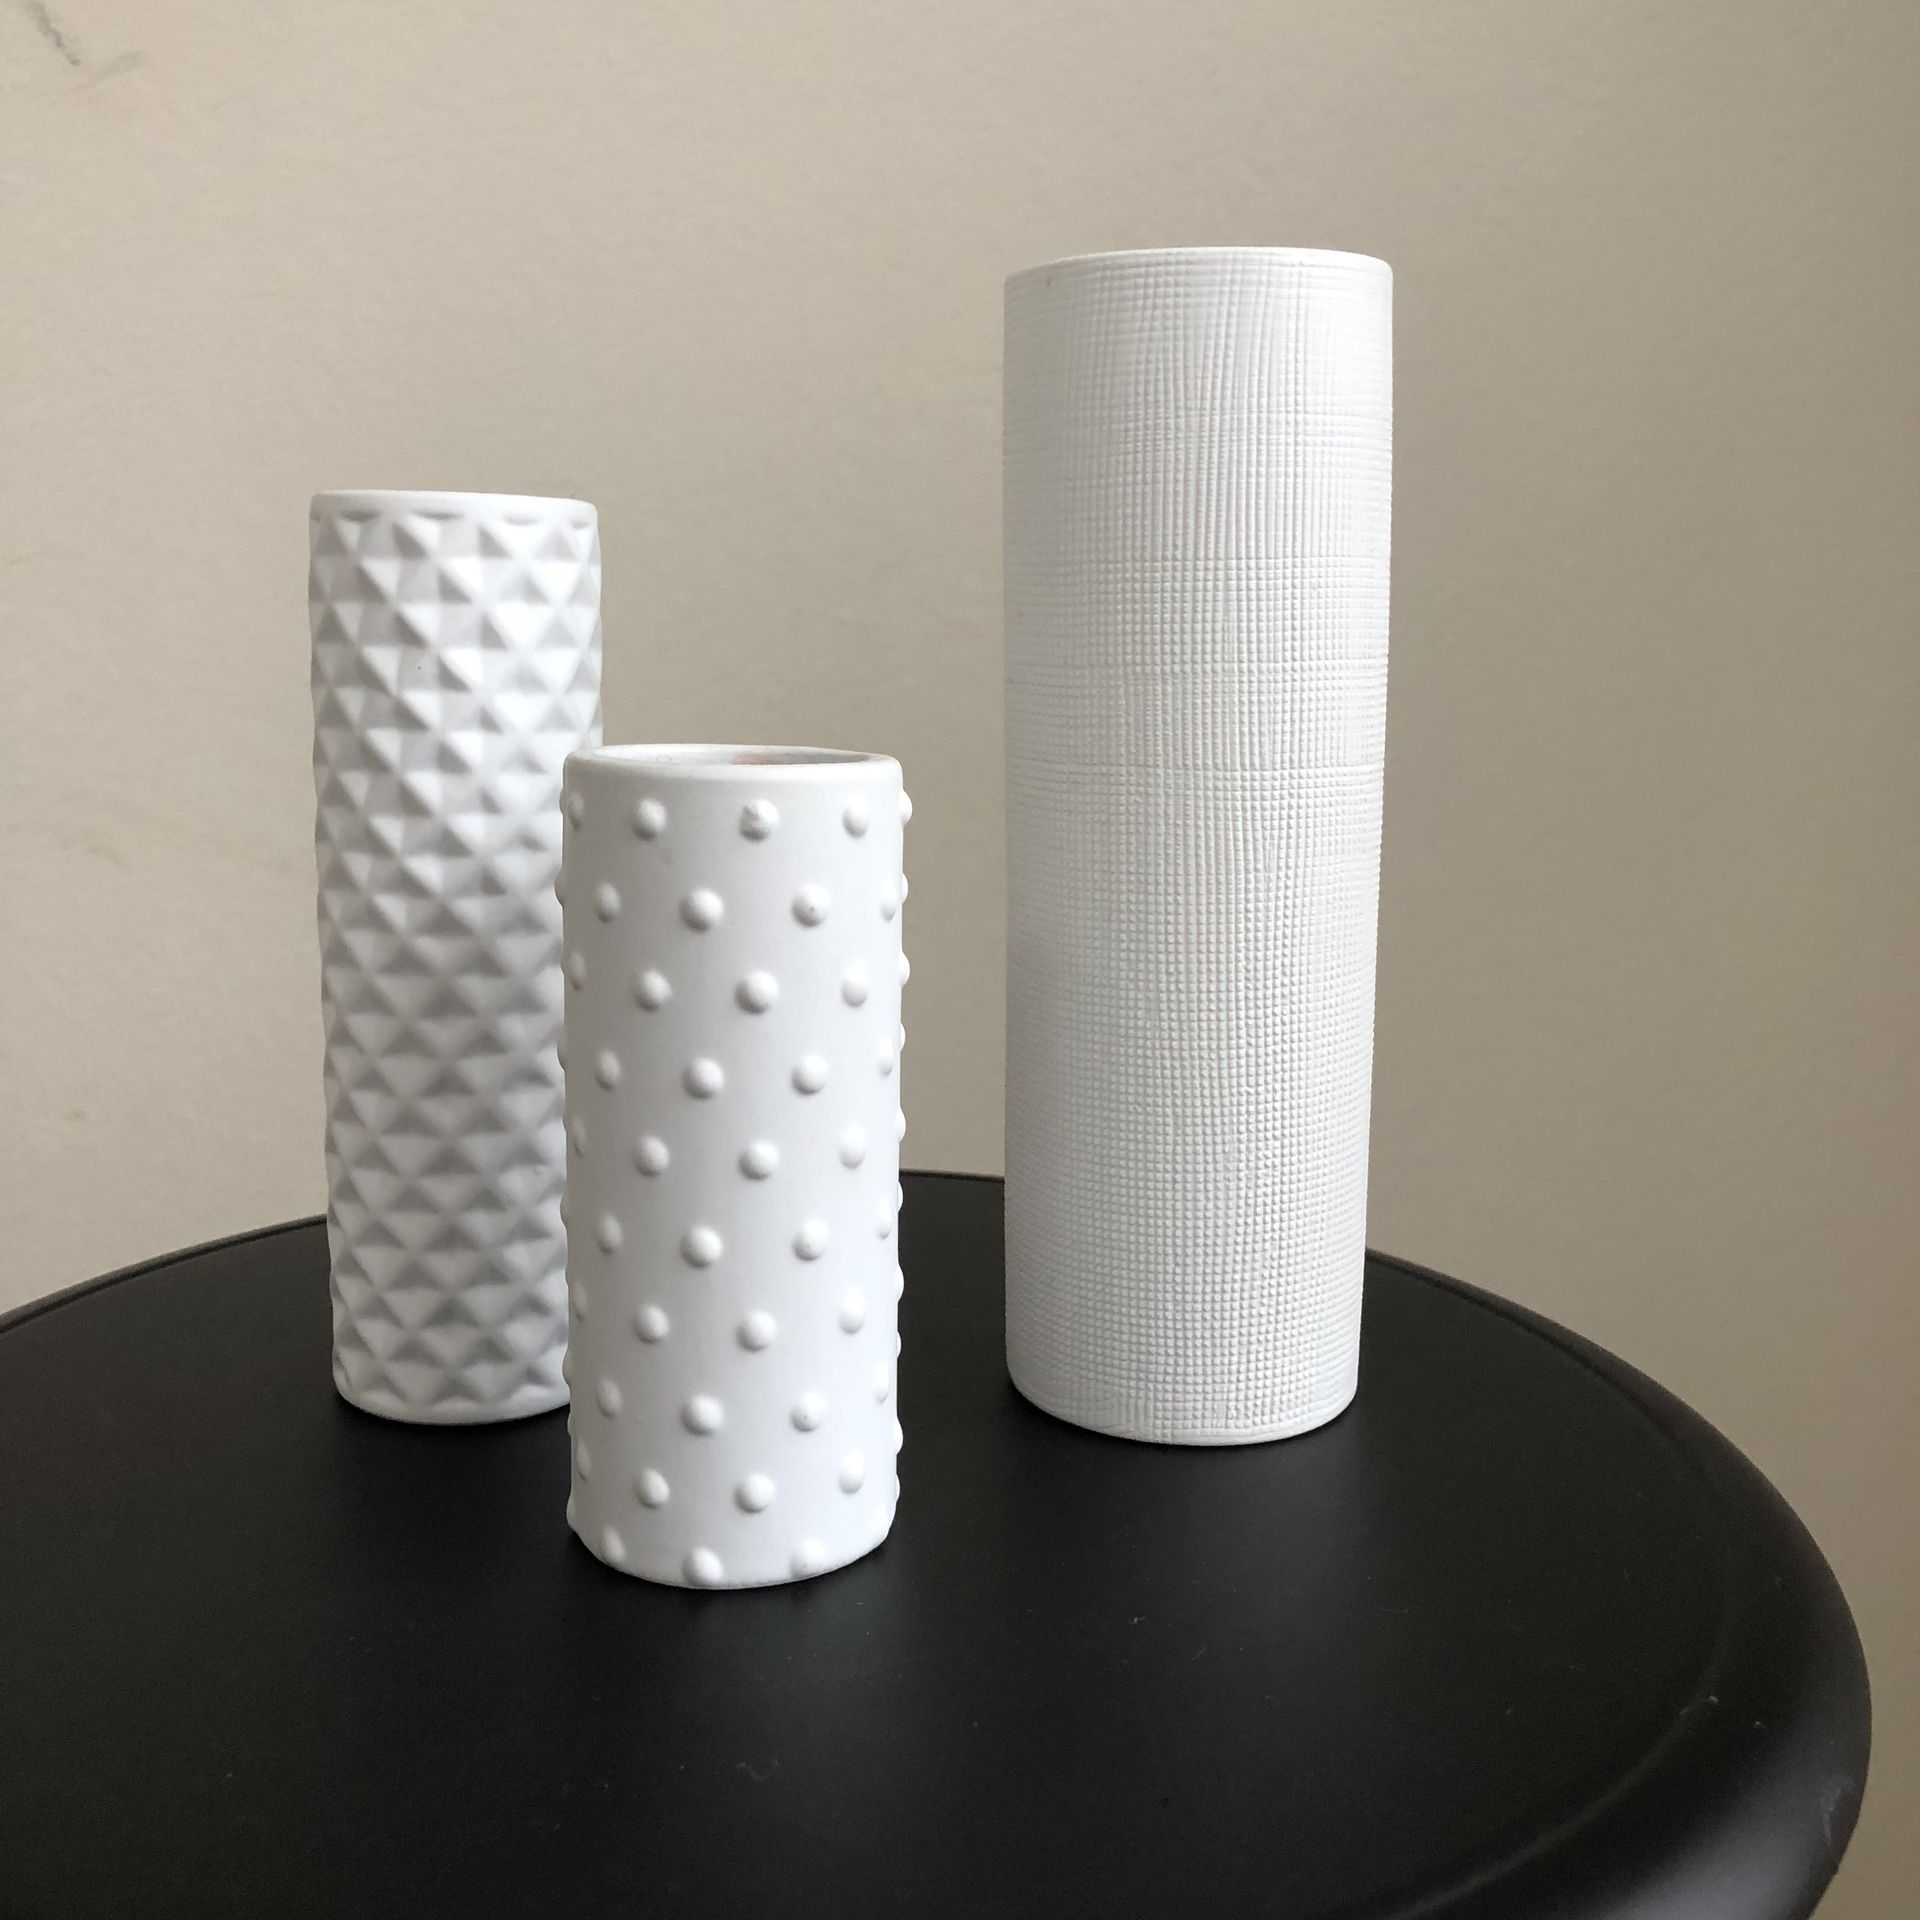 A set of CB2 decorative white vases